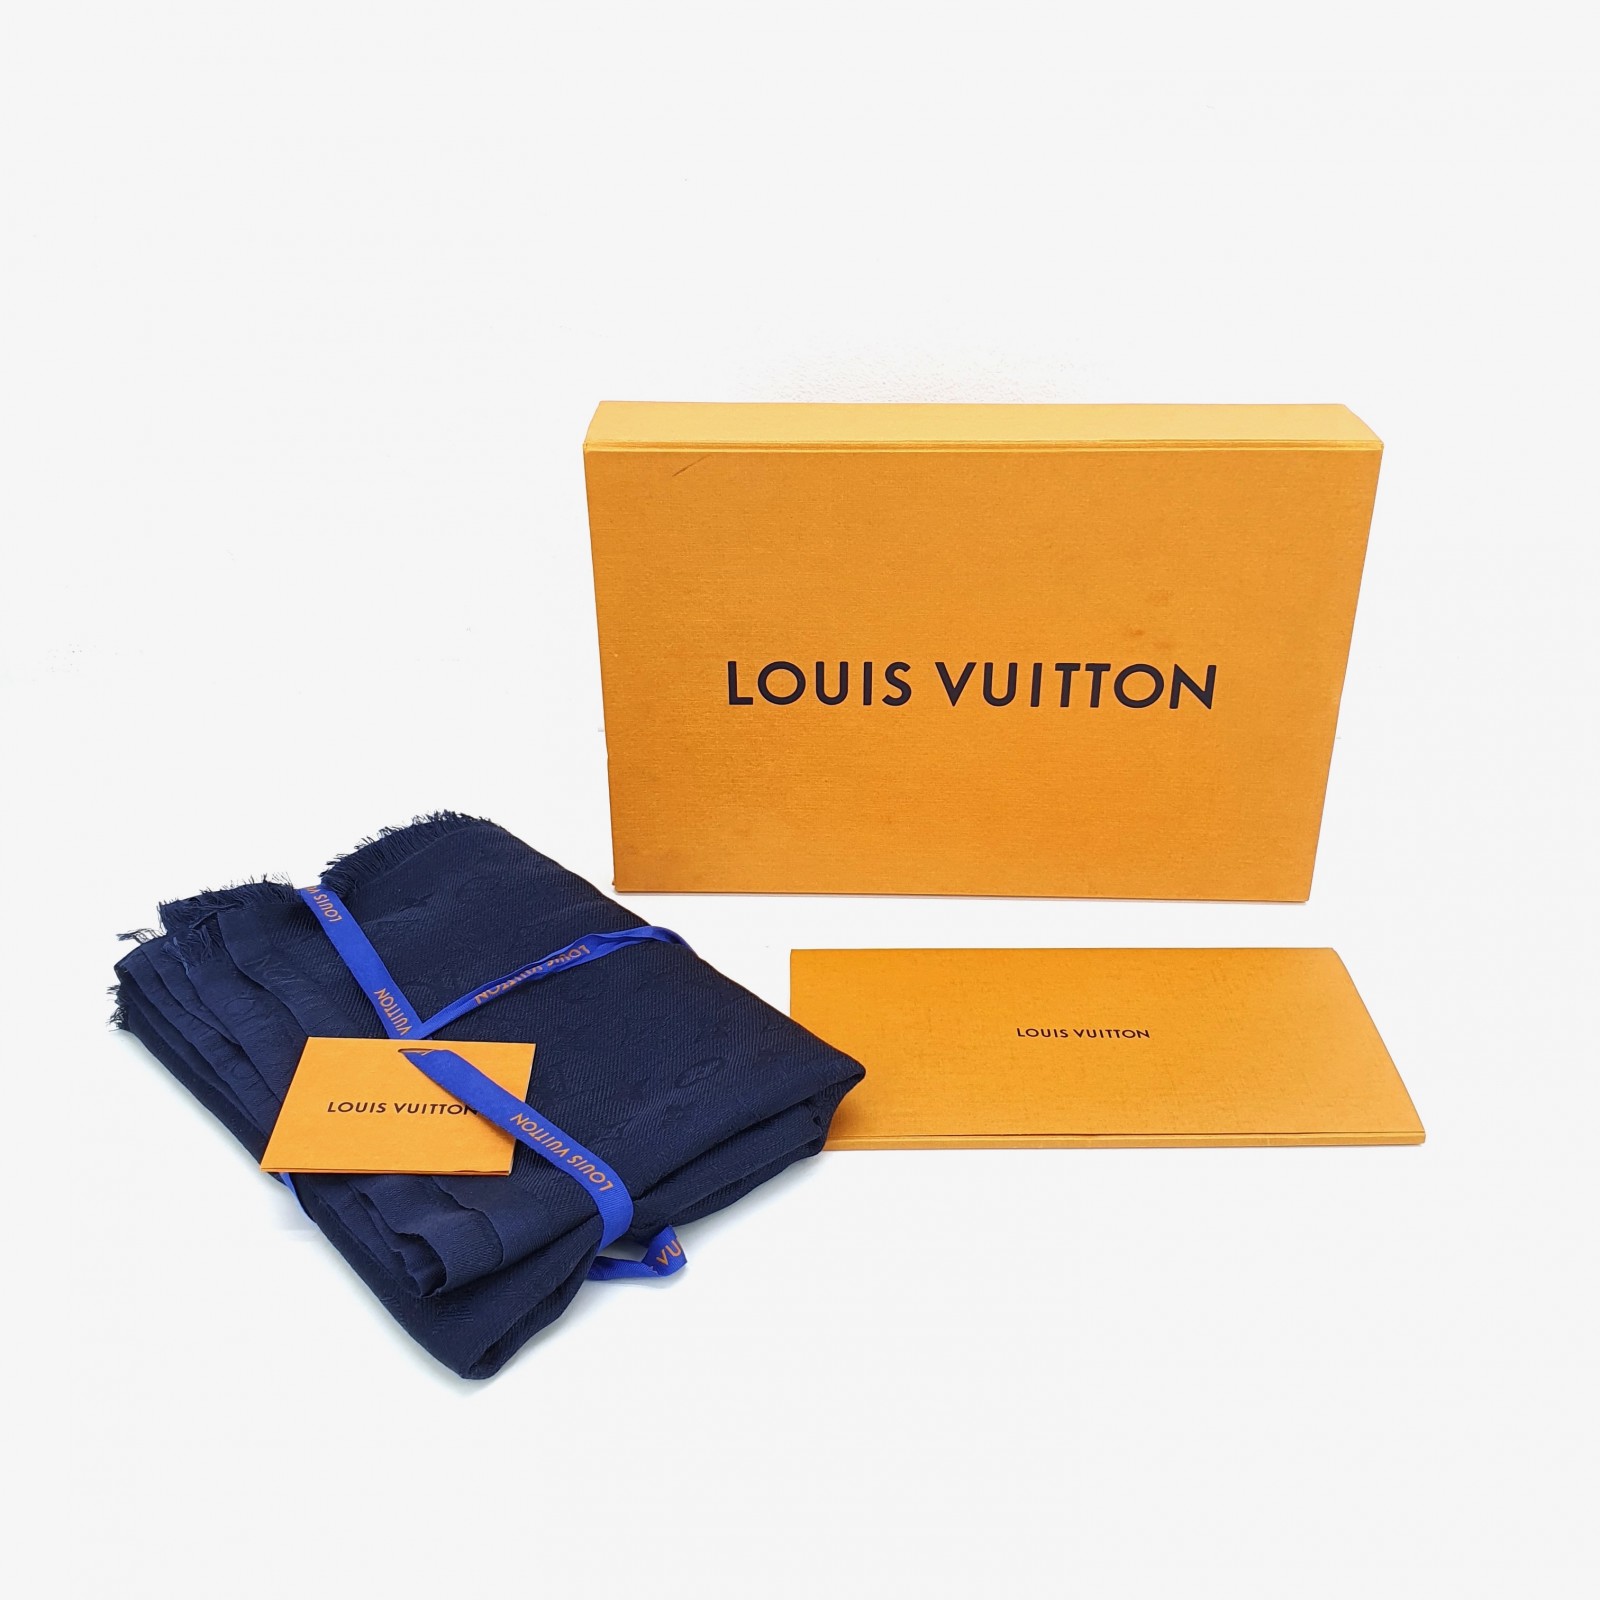 Milanuncios - Louis Vuitton conjunto gorro y bufanda